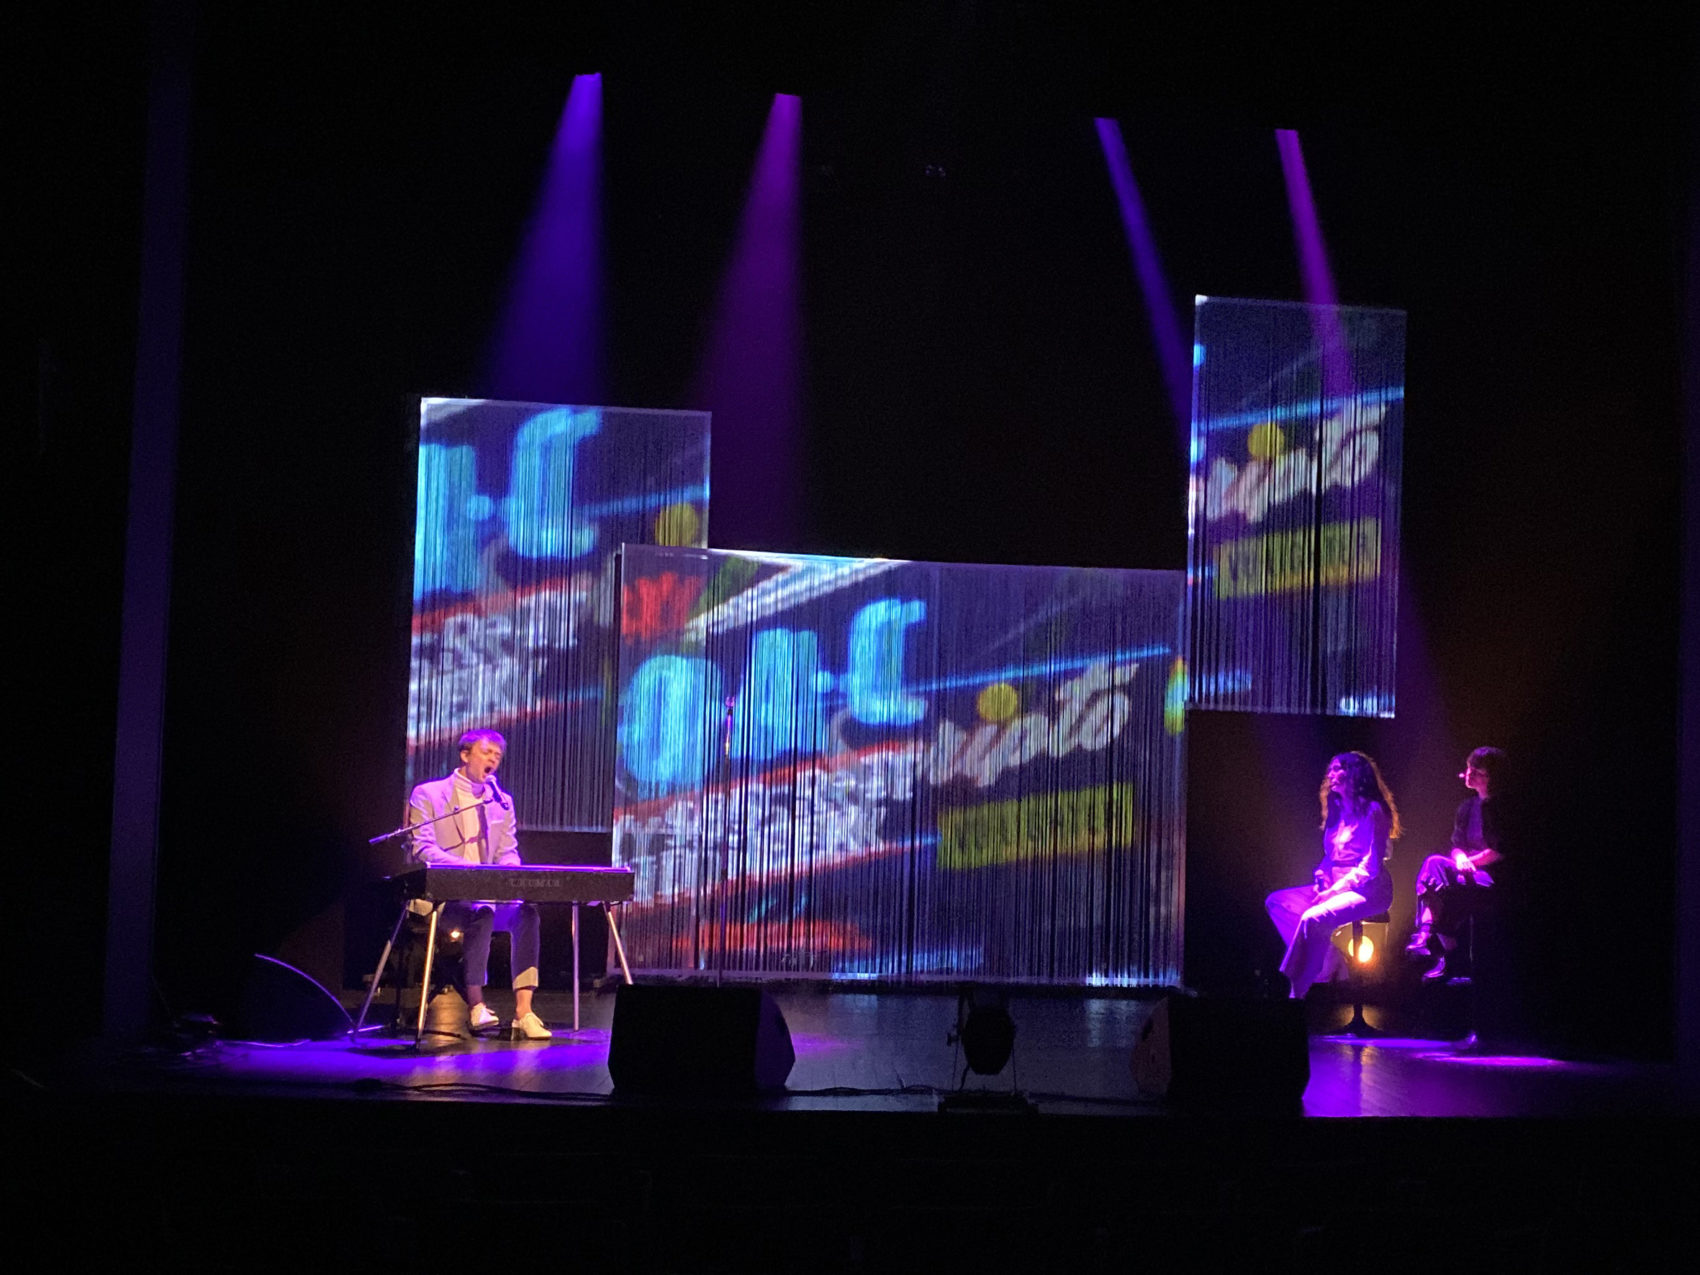 Répétition du spectacle sur scène avec le chanteur à gauche au piano, et deux femmes assises à droite de la scène